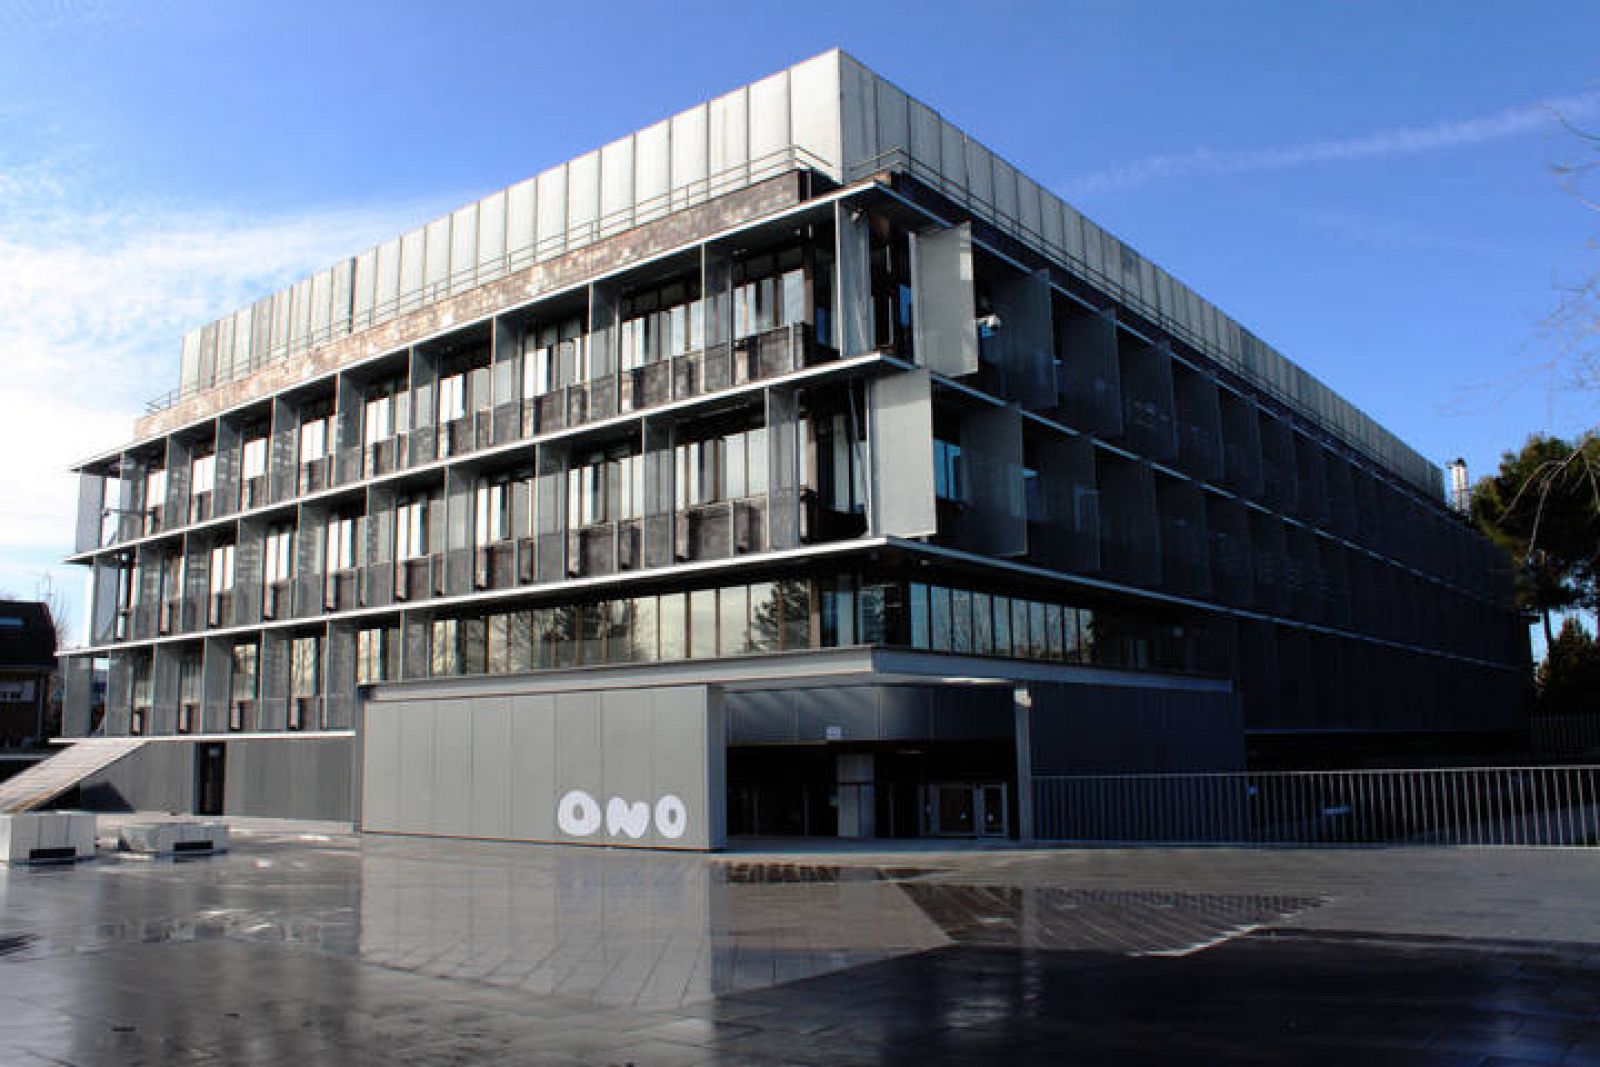 Edificio corporativo de Ono en Pozuelo de Alarcón, Madrid